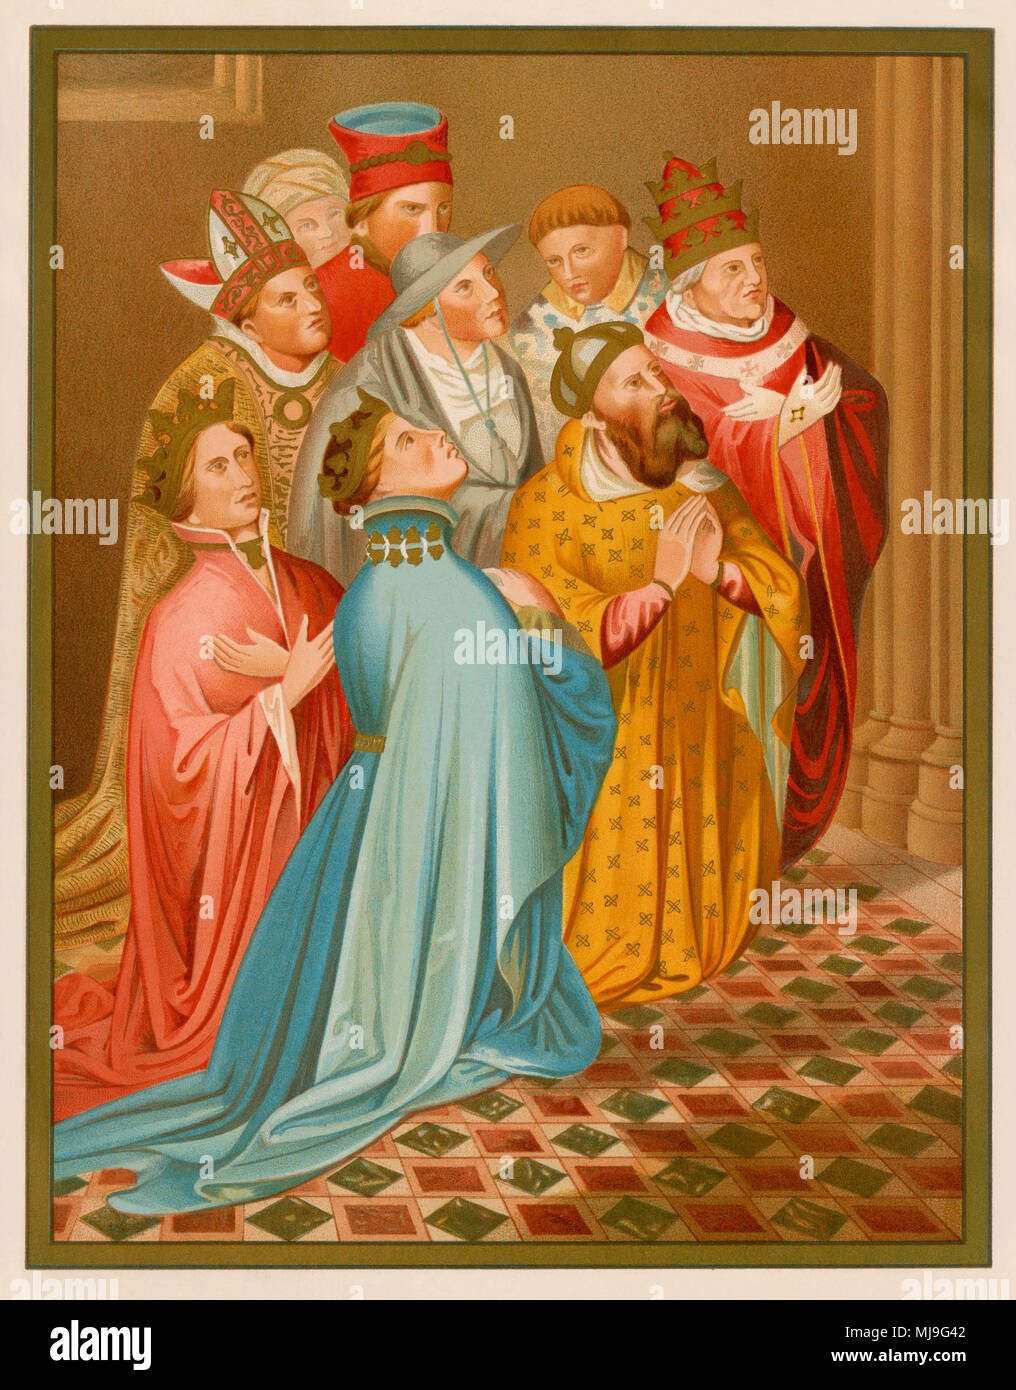 Ferdinando I di Aragona con la regina Eleonora di Alburquerque, dell'imperatore Sigismondo e Papa Martino V. Litografia dal Carderera 'Iconografia Espanola' Foto Stock